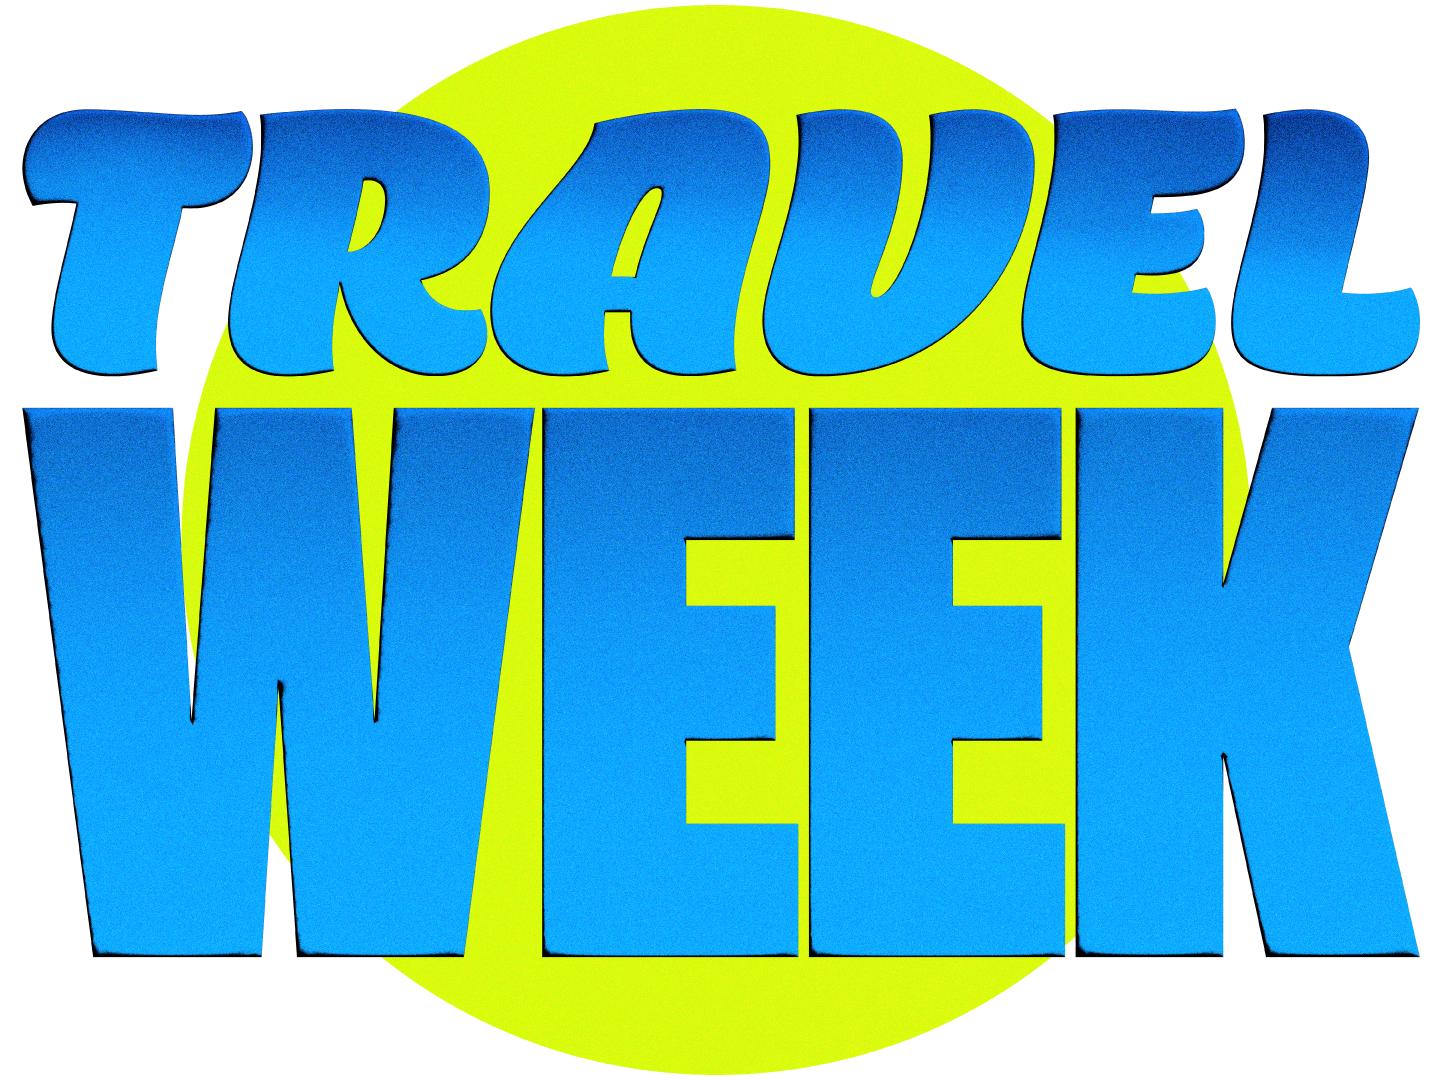 Travel Week Logo